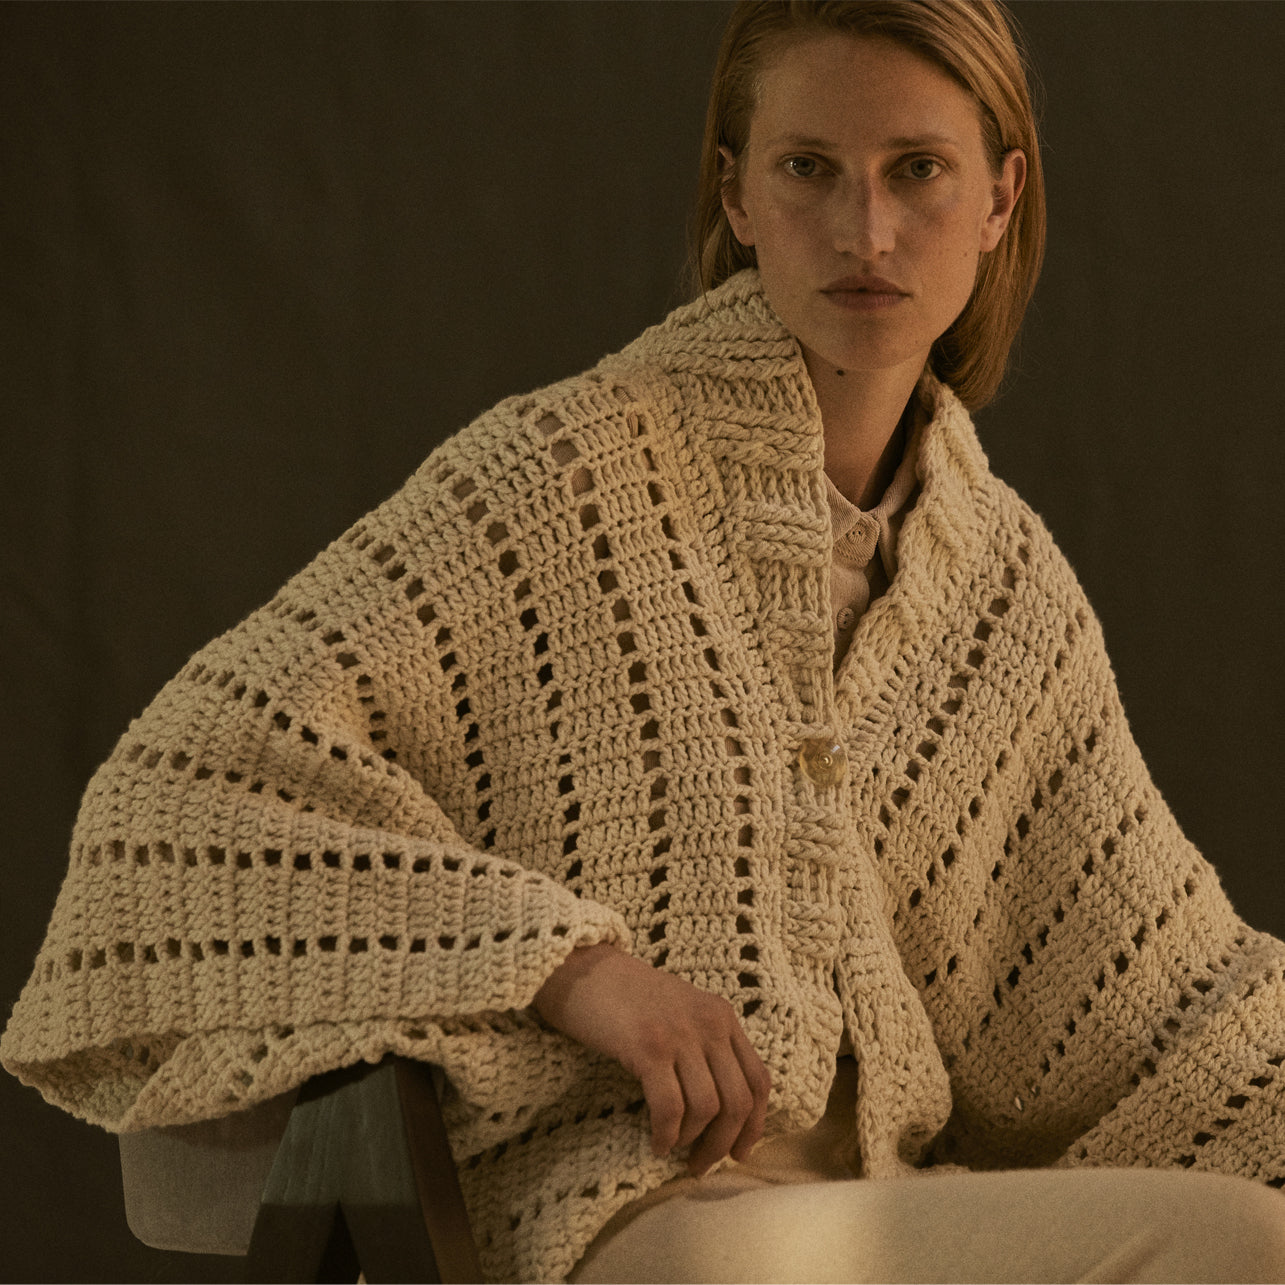 Argentina, Maydi / Maria Abdala Zolezzi, Knitwear & Weaving